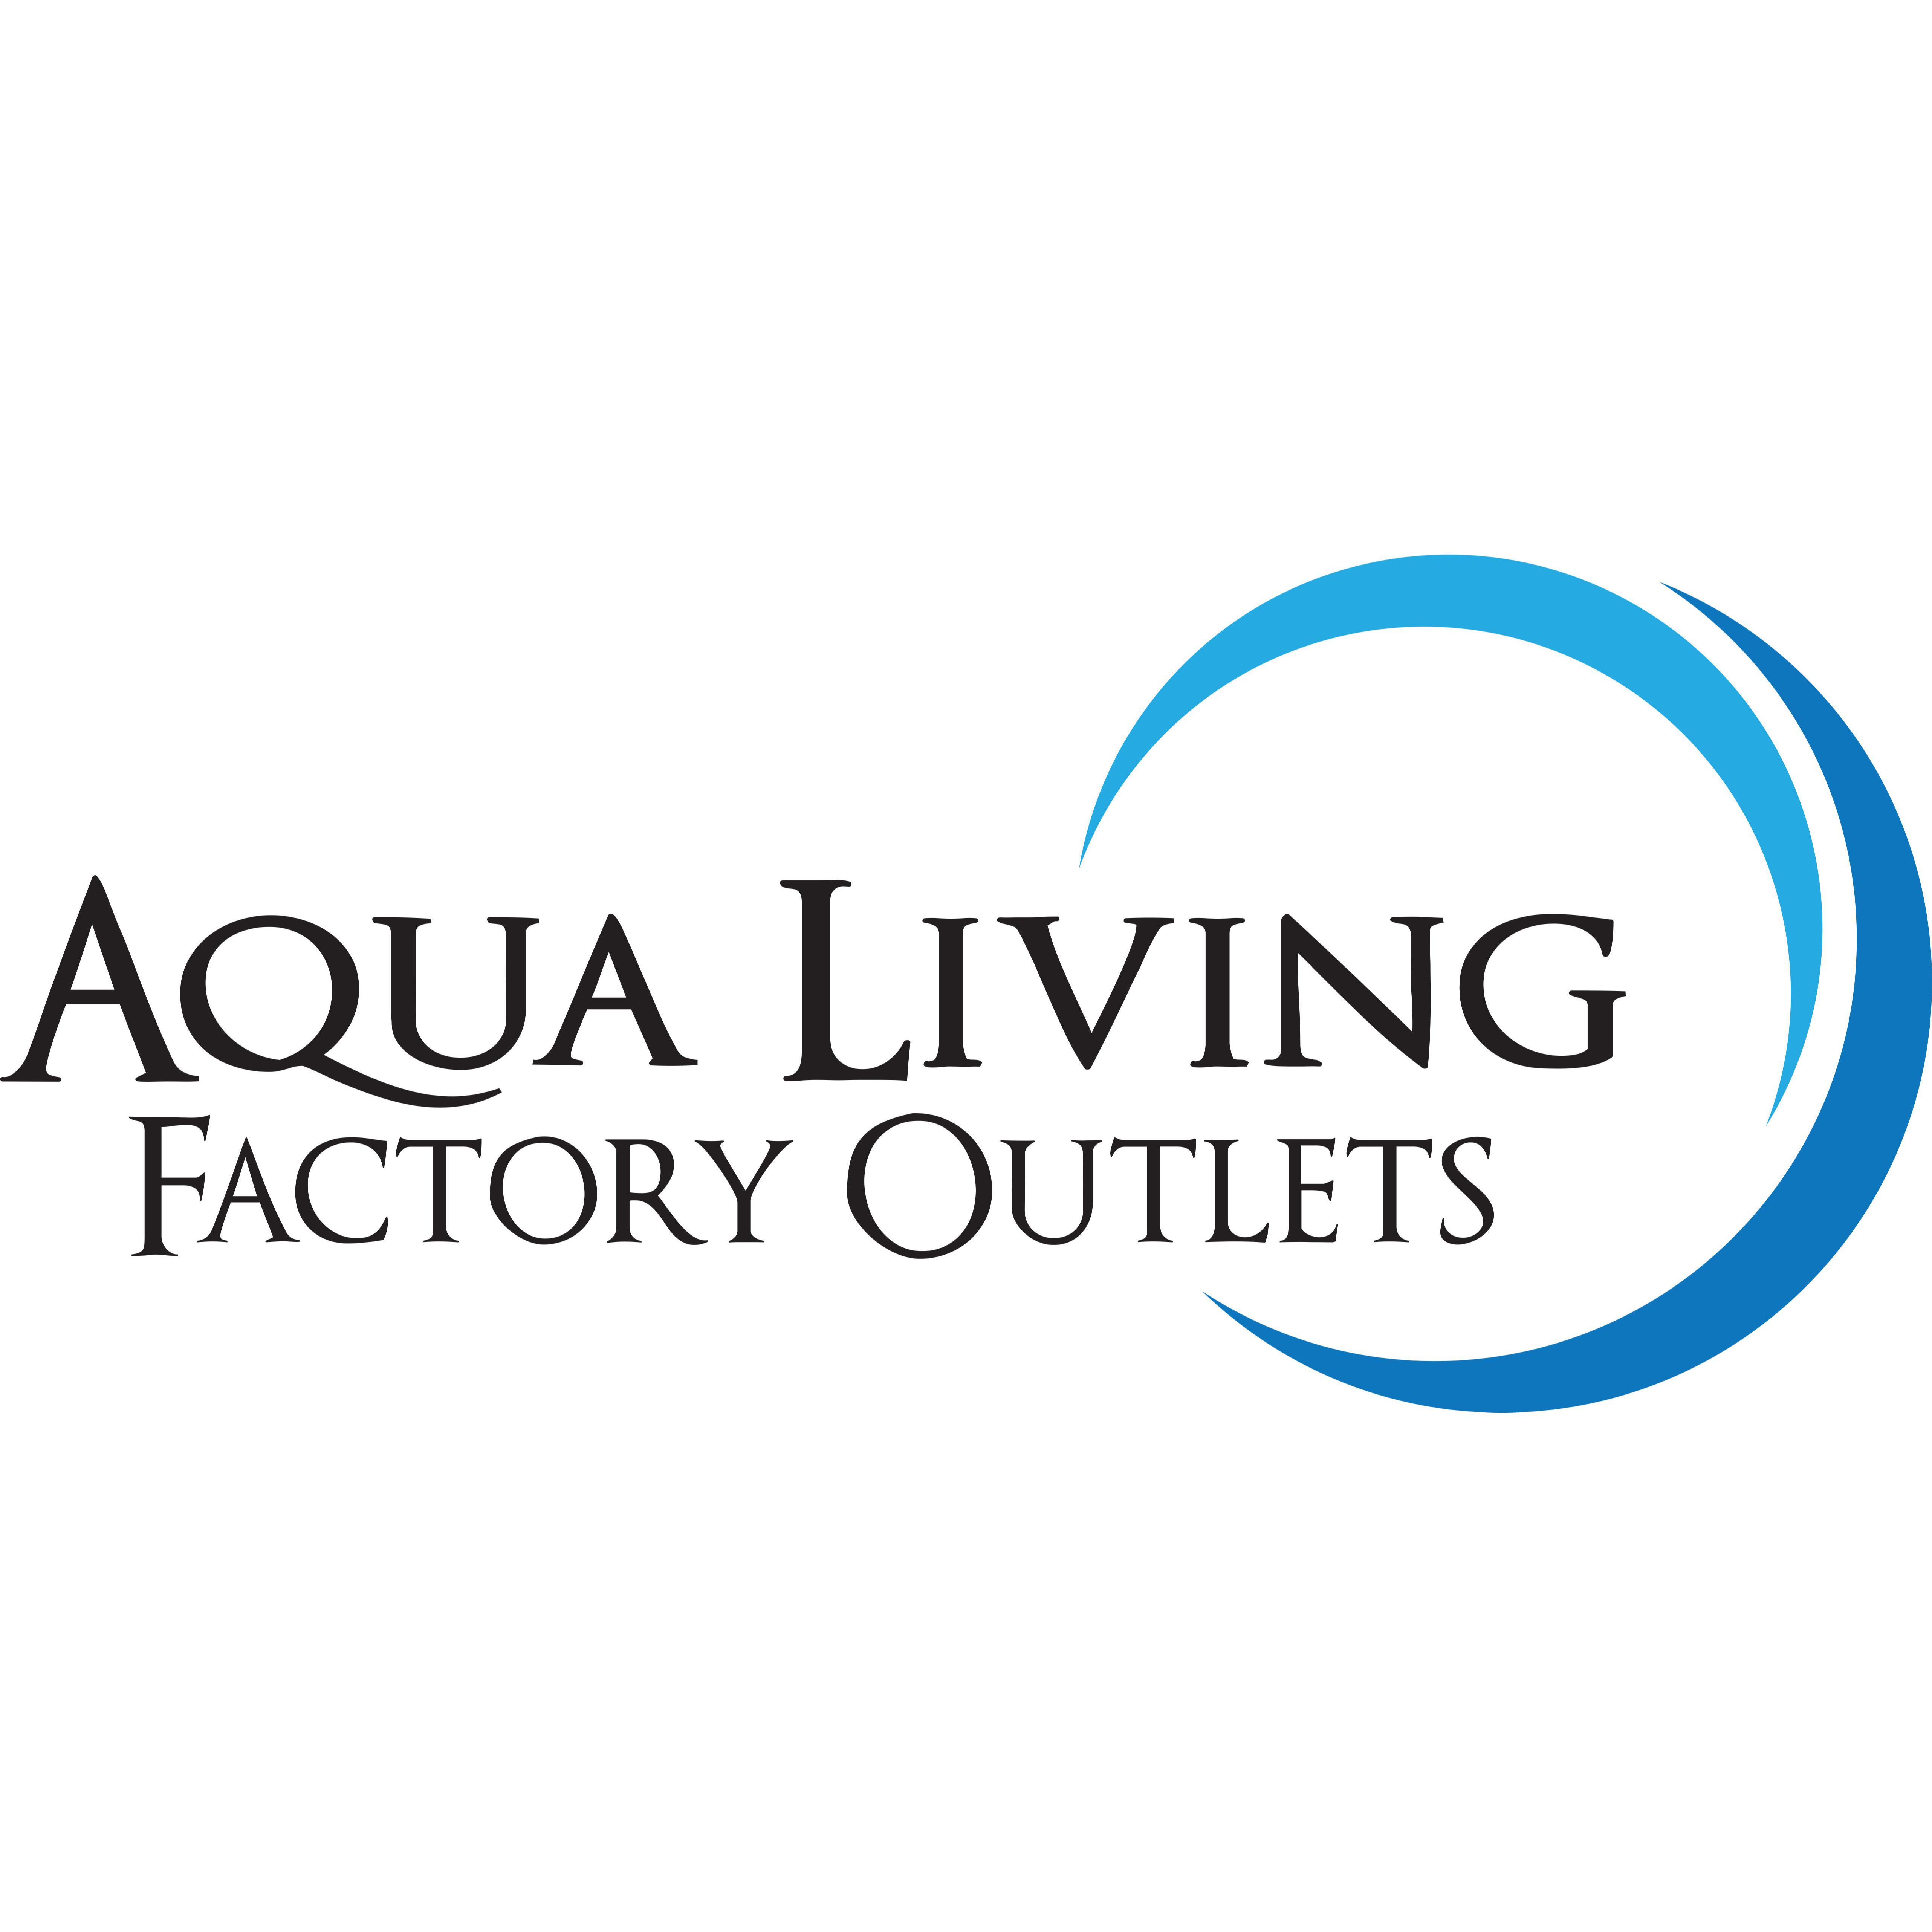 Aqua Living Factory Outlets